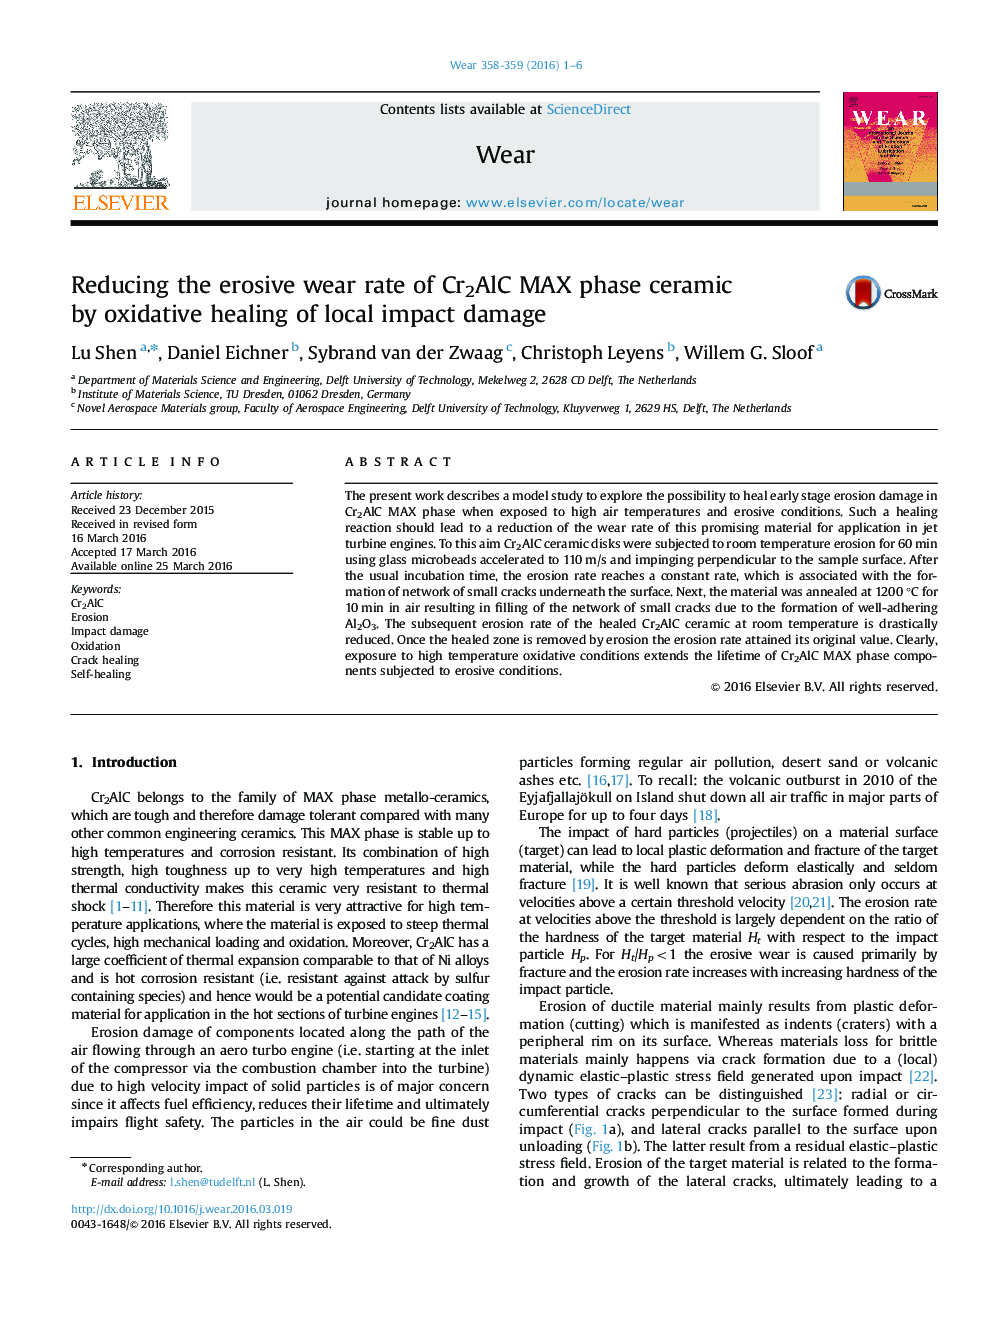 کاهش میزان سایش فرسایش فاز سرامیک Cr2AlC MAX توسط بهبود اکسیداتیو آسیب ضربه محلی